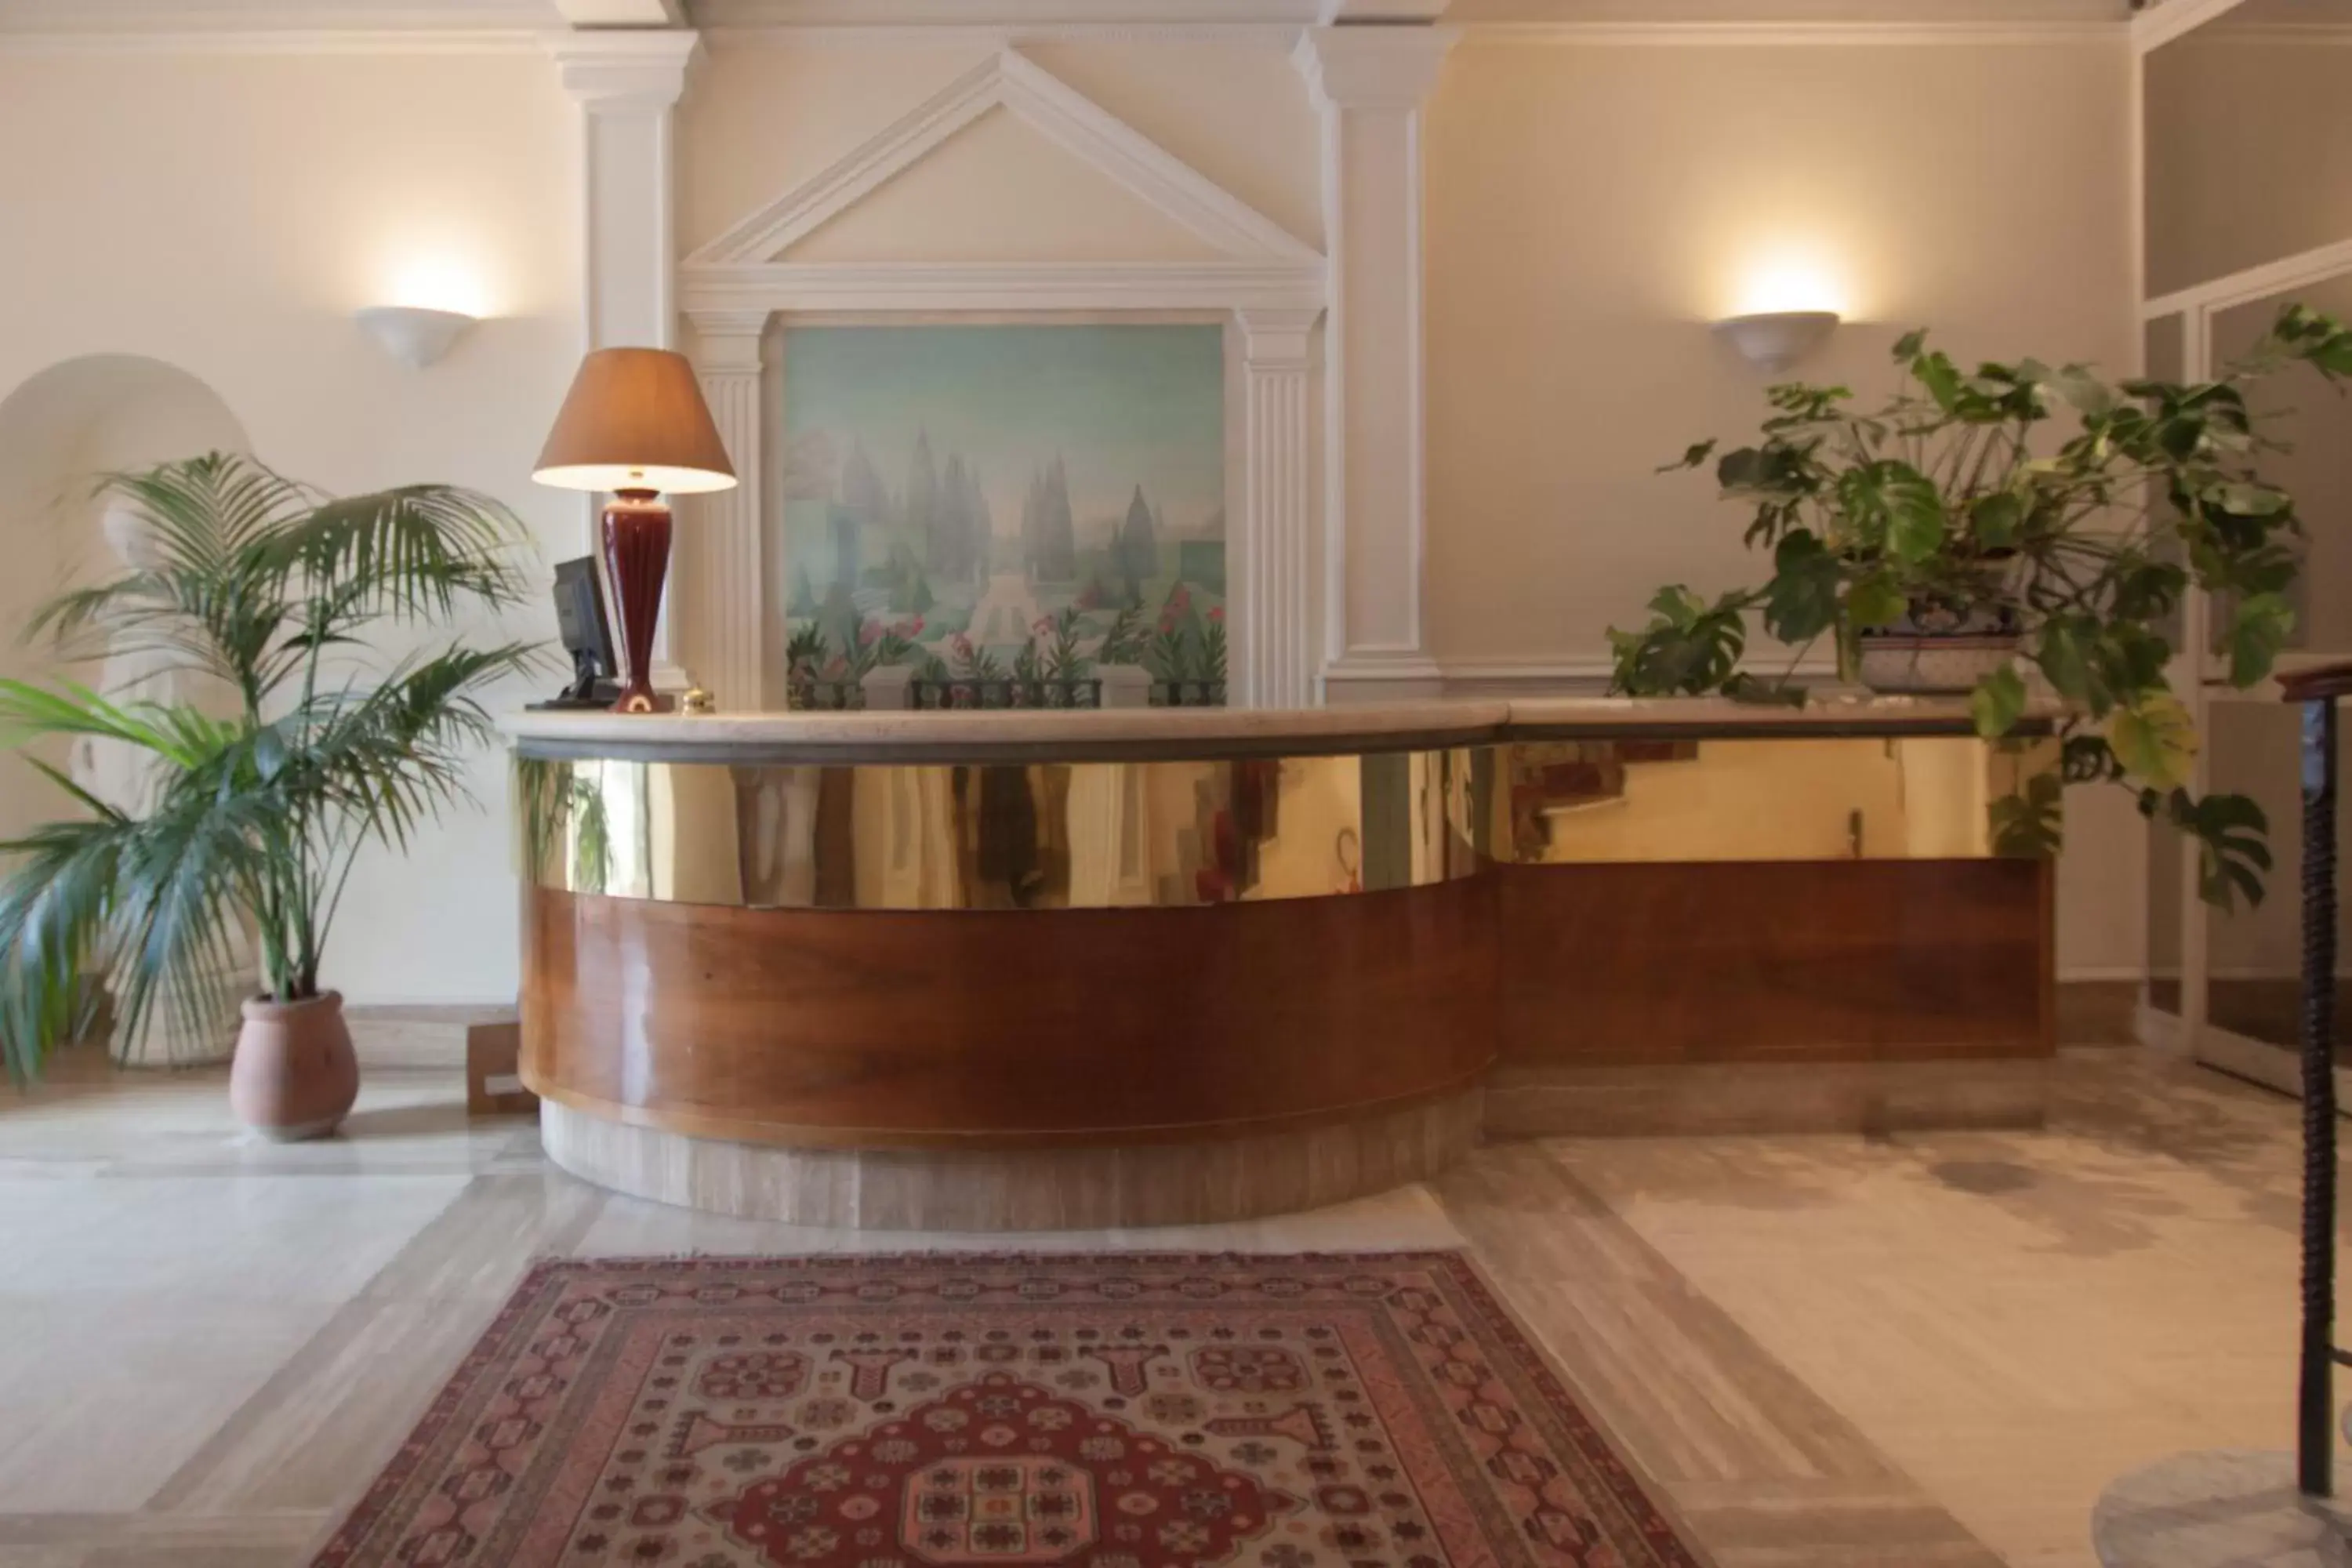 Lobby or reception, Lobby/Reception in Hotel Laurentia